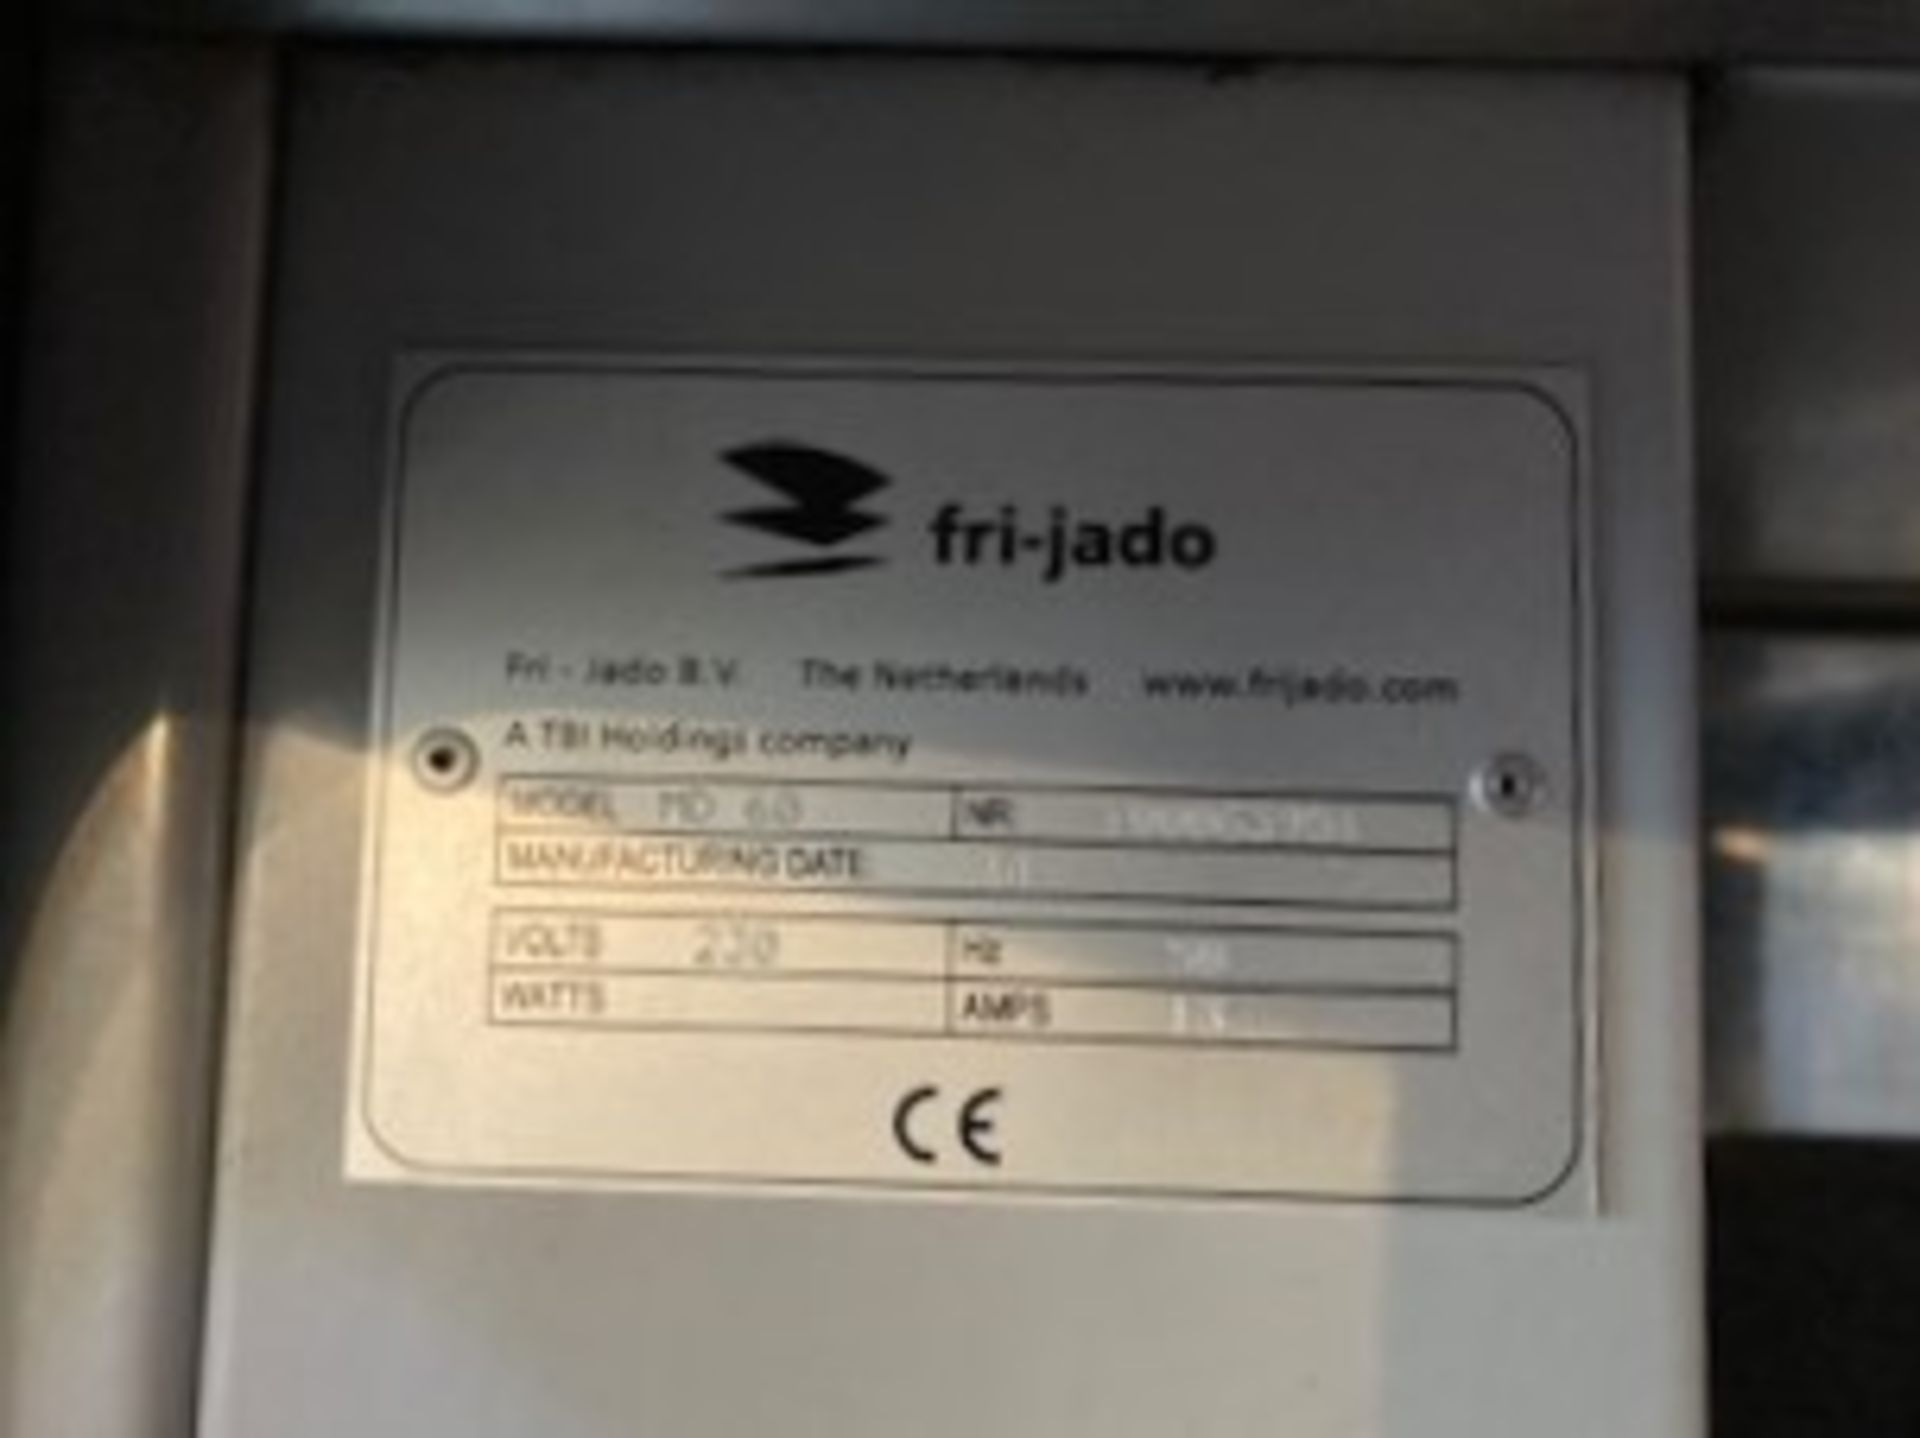 Fri-Jado MD 60 Multi Deck Heated Display - Image 6 of 6